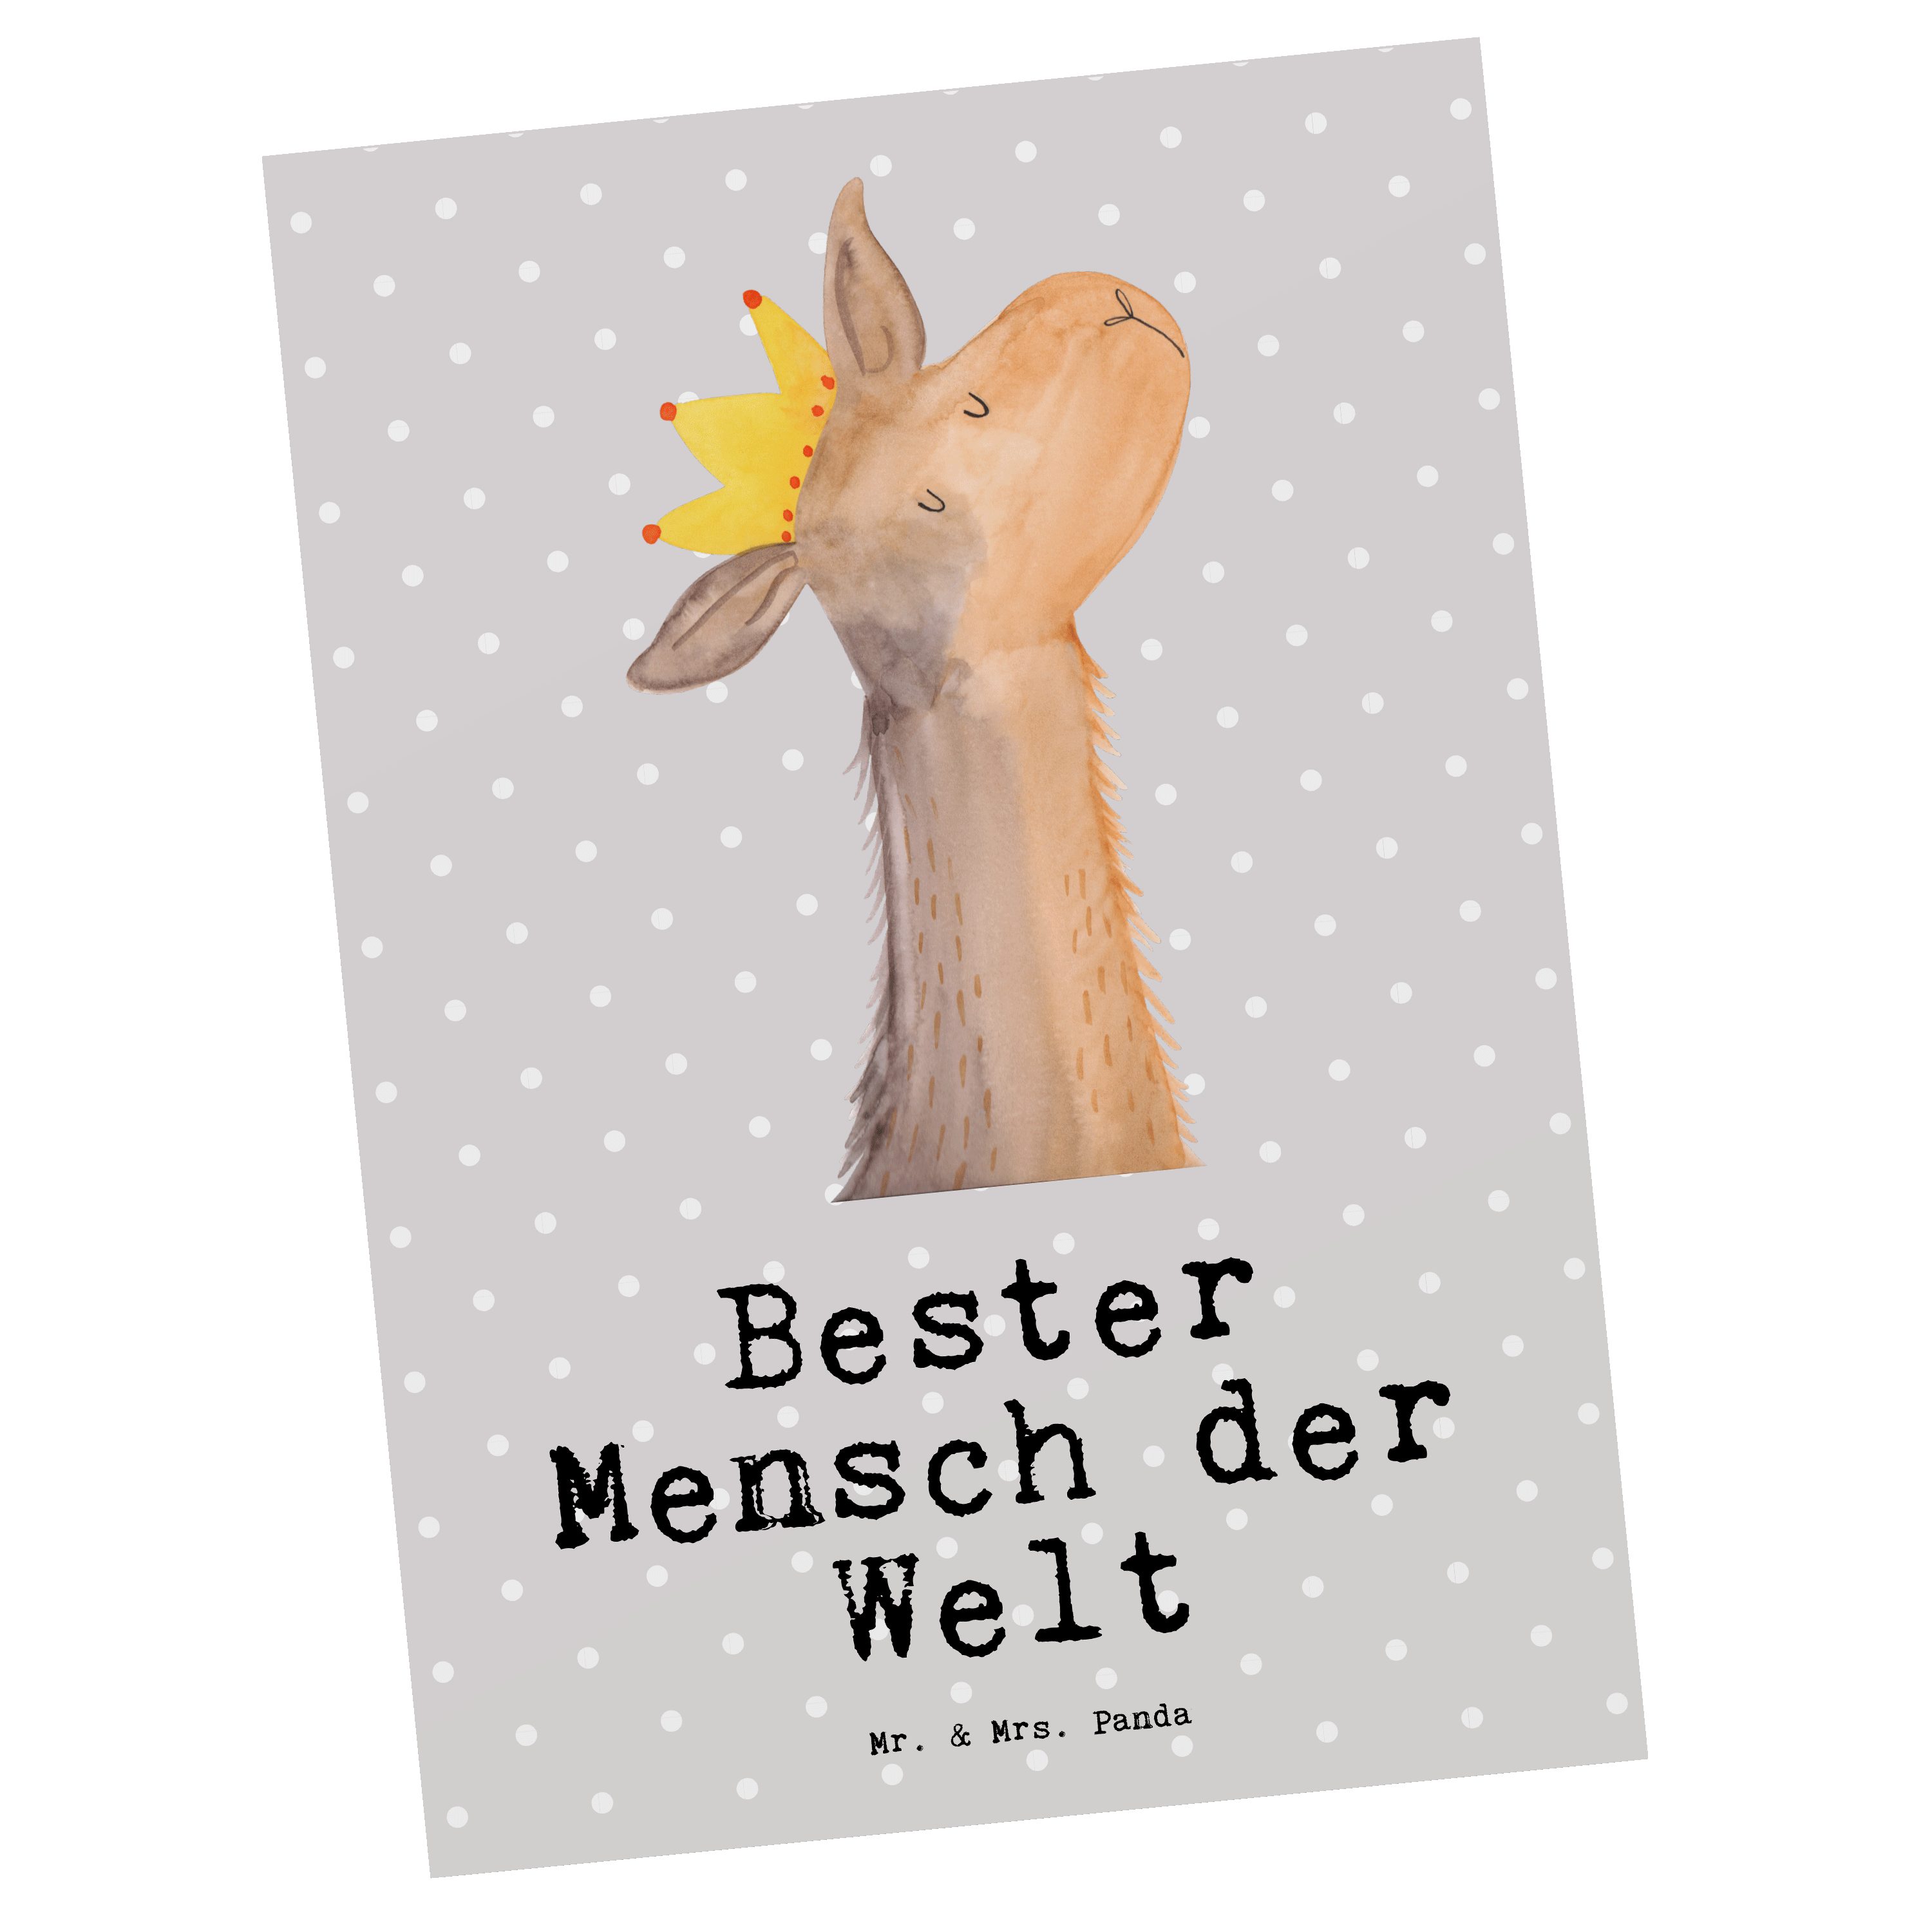 Mr. & Mrs. Panda Postkarte Lama Bester Mensch der Welt - Grau Pastell - Geschenk, Geburtstag, Ge